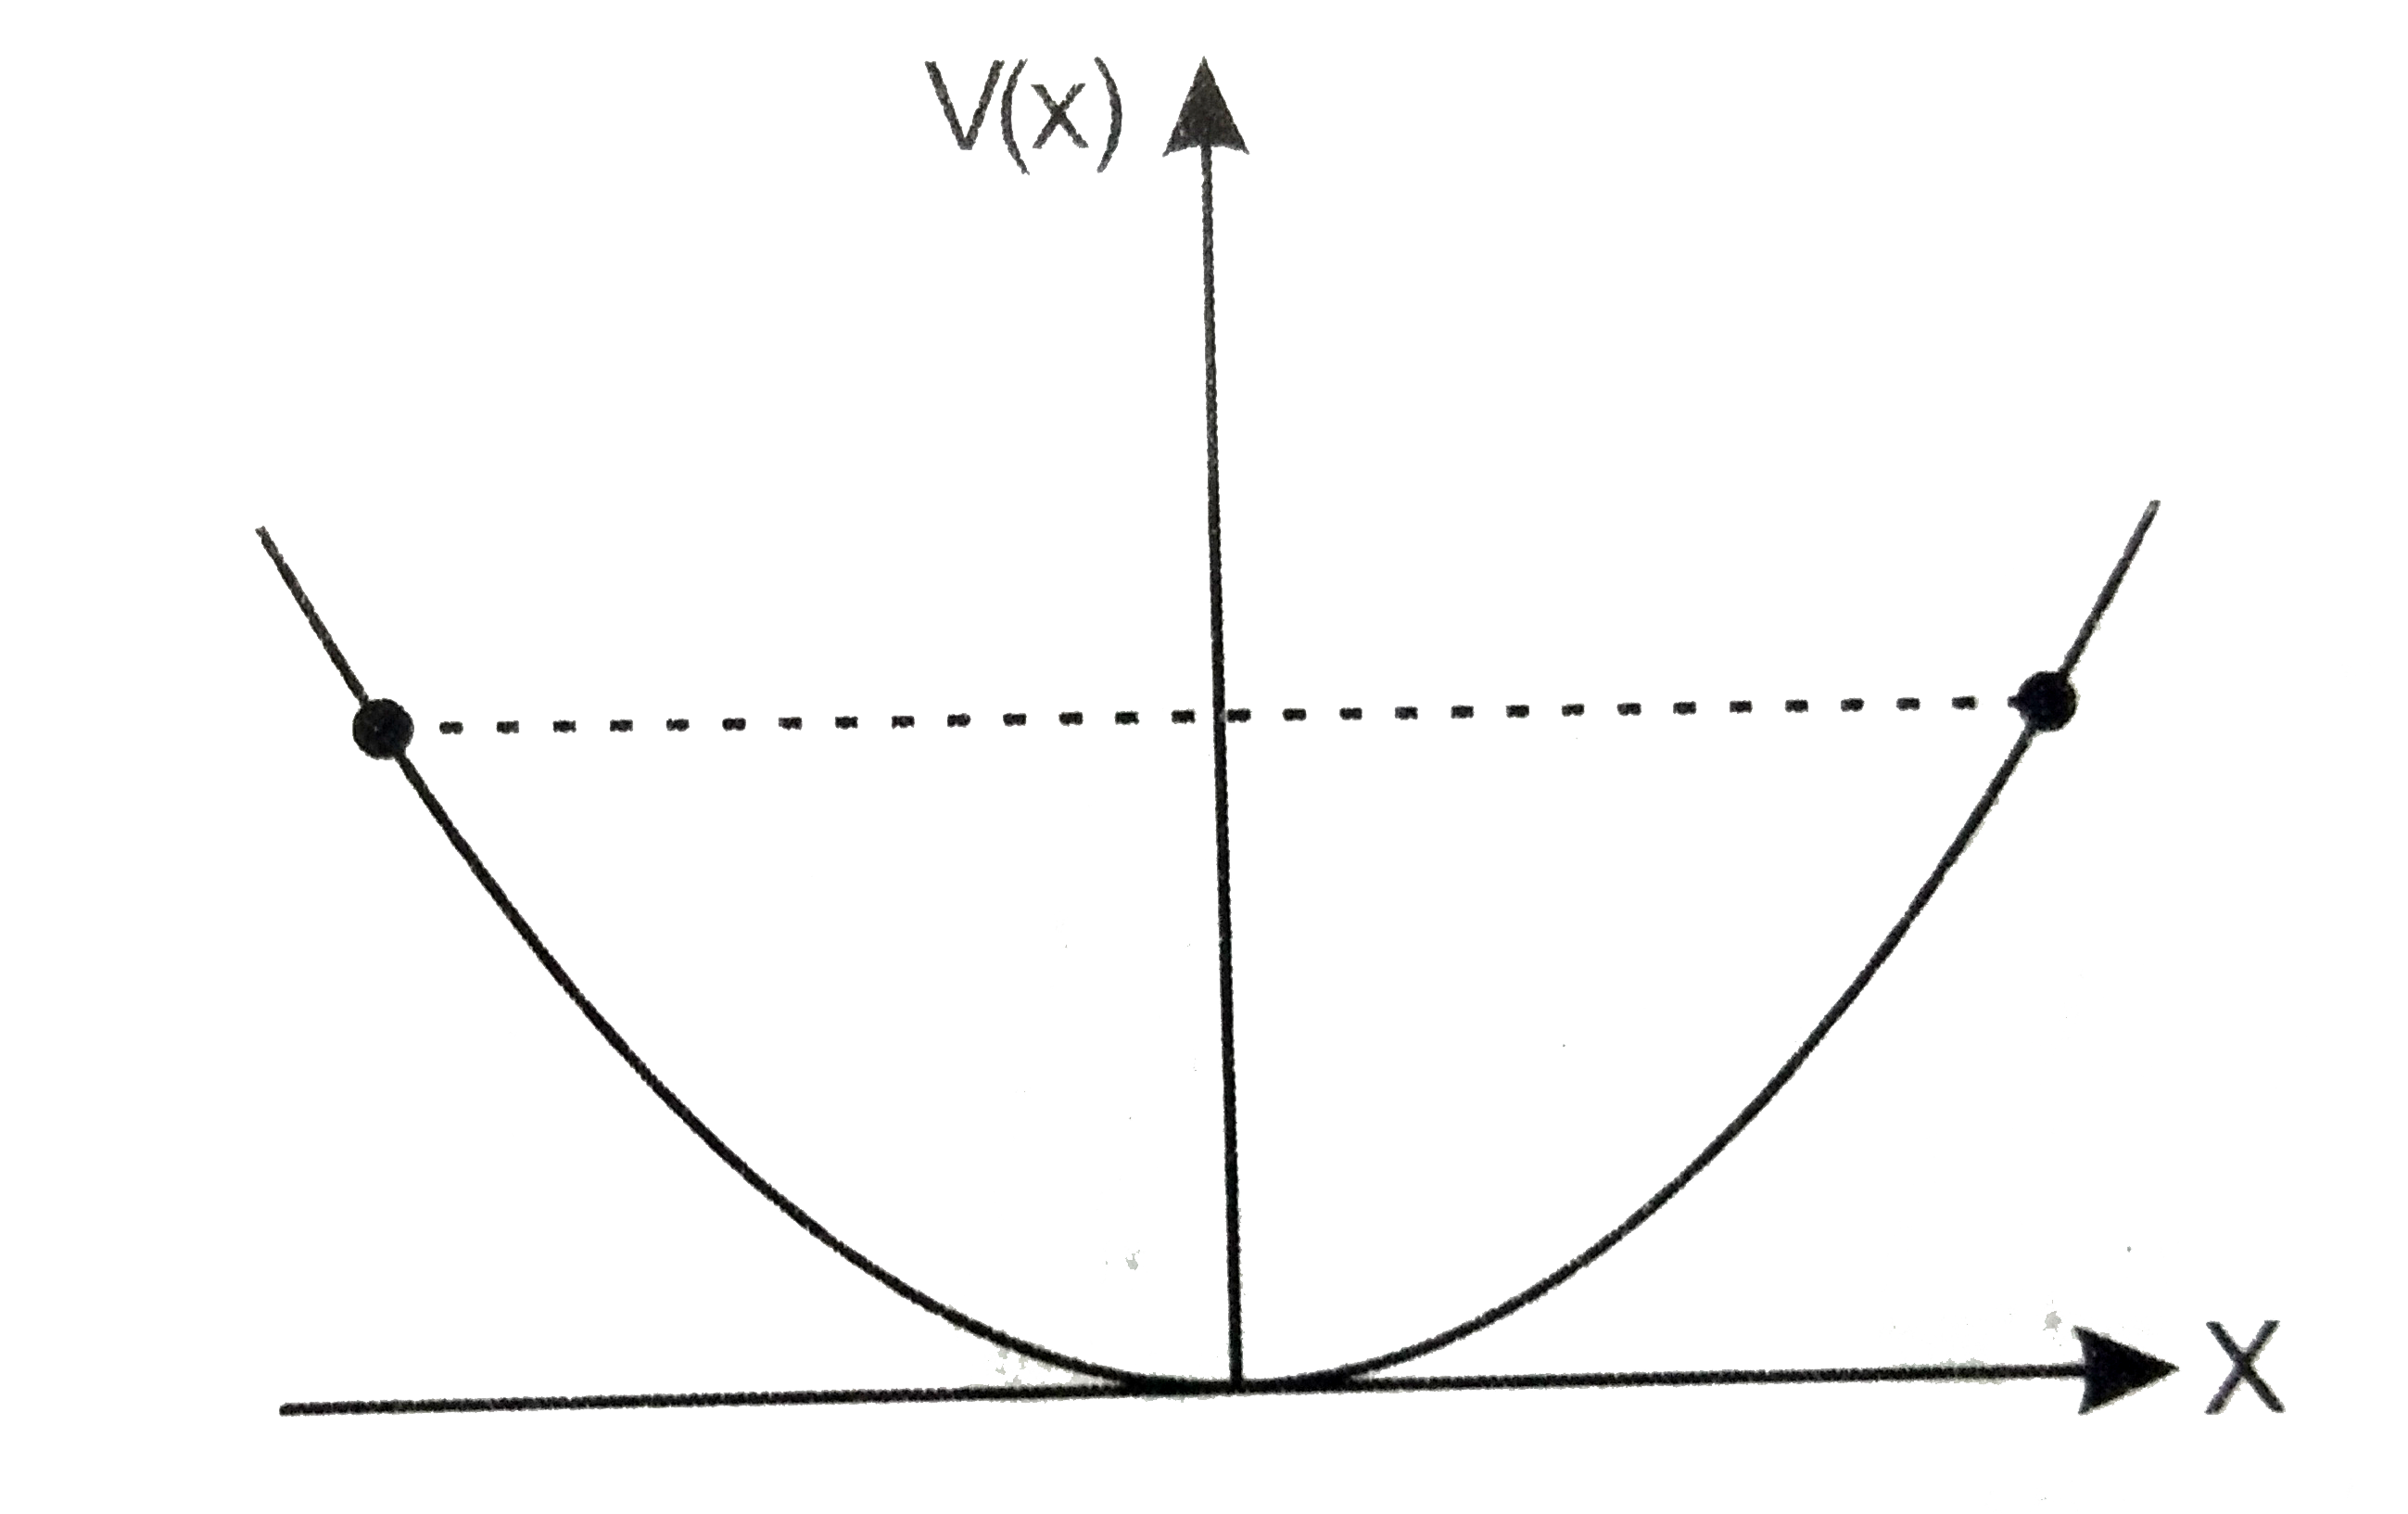 रेखीय सरल आवर्त गति कर रहे किसी कण का स्थितिज ऊर्जा फलन V(x)1/2kx^(2)  है, जहाँ k दोलन का बल नियतांक है। k=0।5Nm^(-1) के लिए V (x ) व x के मध्य ग्राफ चित्र में दिखाया गया है। यह दिखाइए की इस विभव के अंतर्गत गतिमान कुल 1 J ऊर्जा wale कण को अवश्य ही वापिस आना' चाहिए , अब यह x=+-2  मीटर पर पहुँचता है।